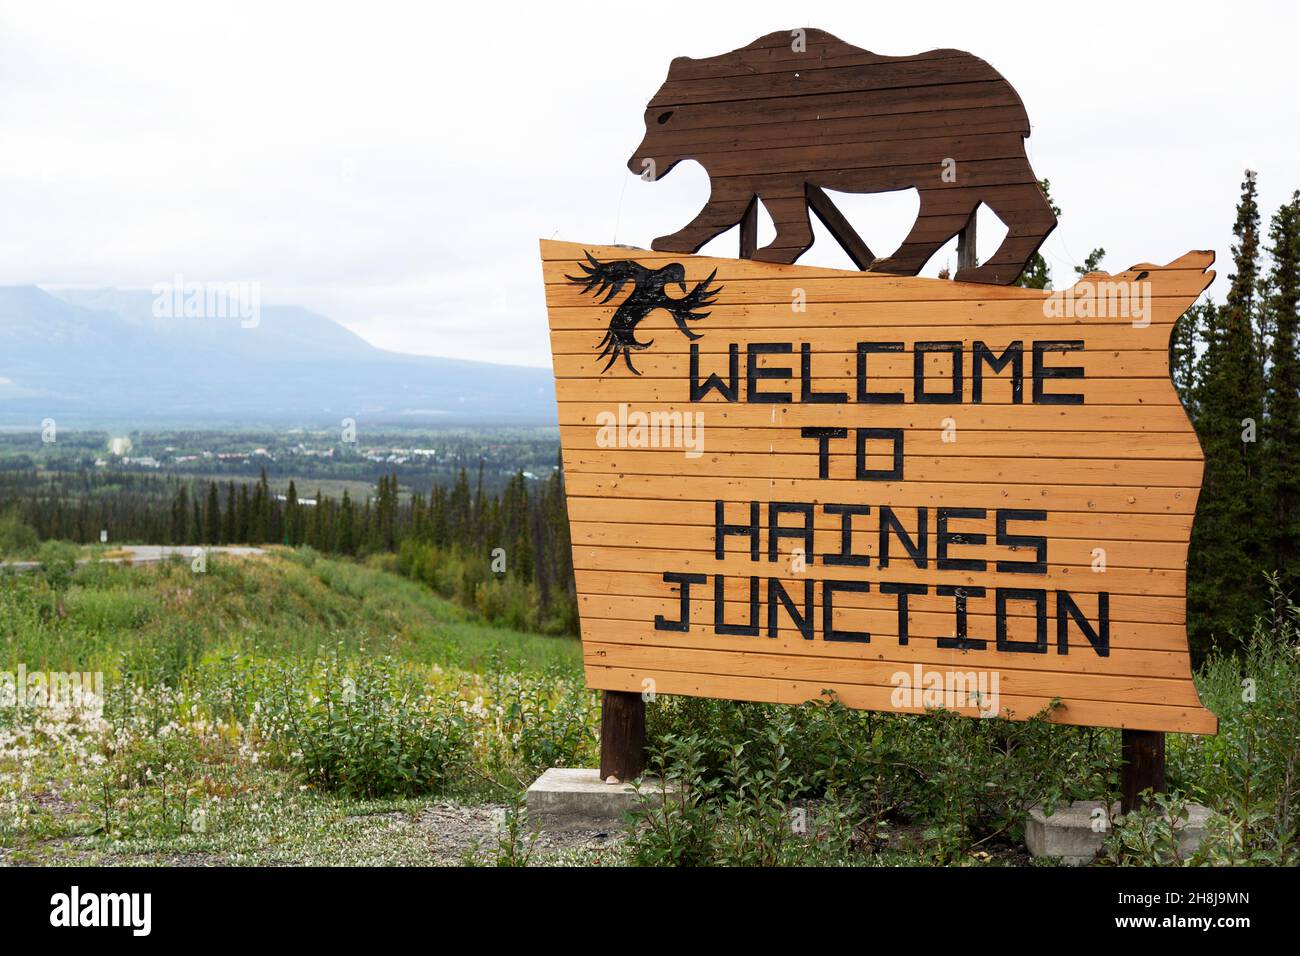 Schild für Haines Junction im Südwesten des Yukon, Kanada. Das Holzschild zeigt eine Figur, die einen Grizzlybären darstellt. Stockfoto